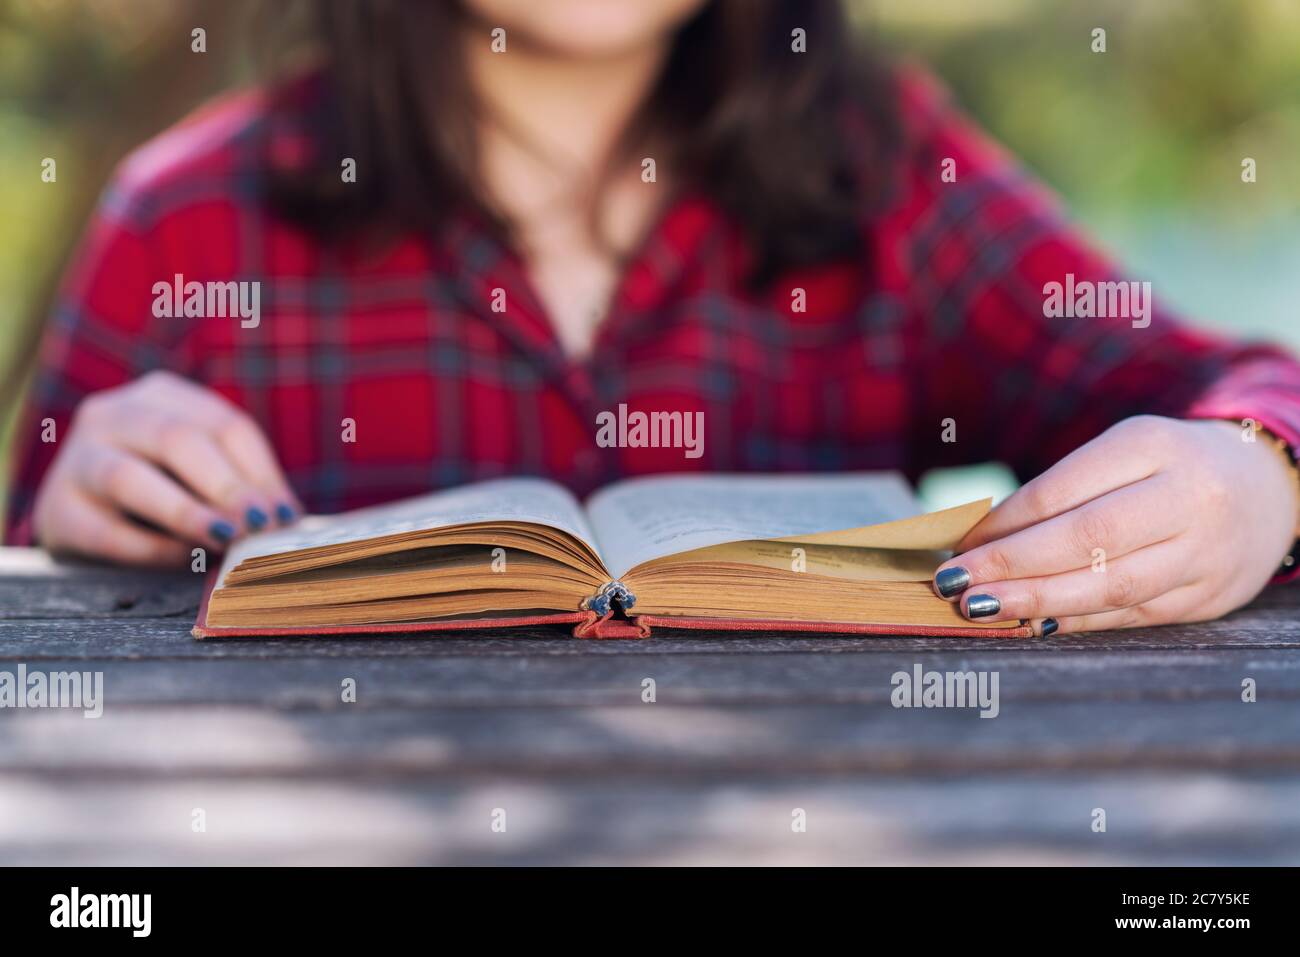 Primo piano di una ragazza seduta e leggendo un libro o studiando con i libri in un parco. Foto di alta qualità Foto Stock